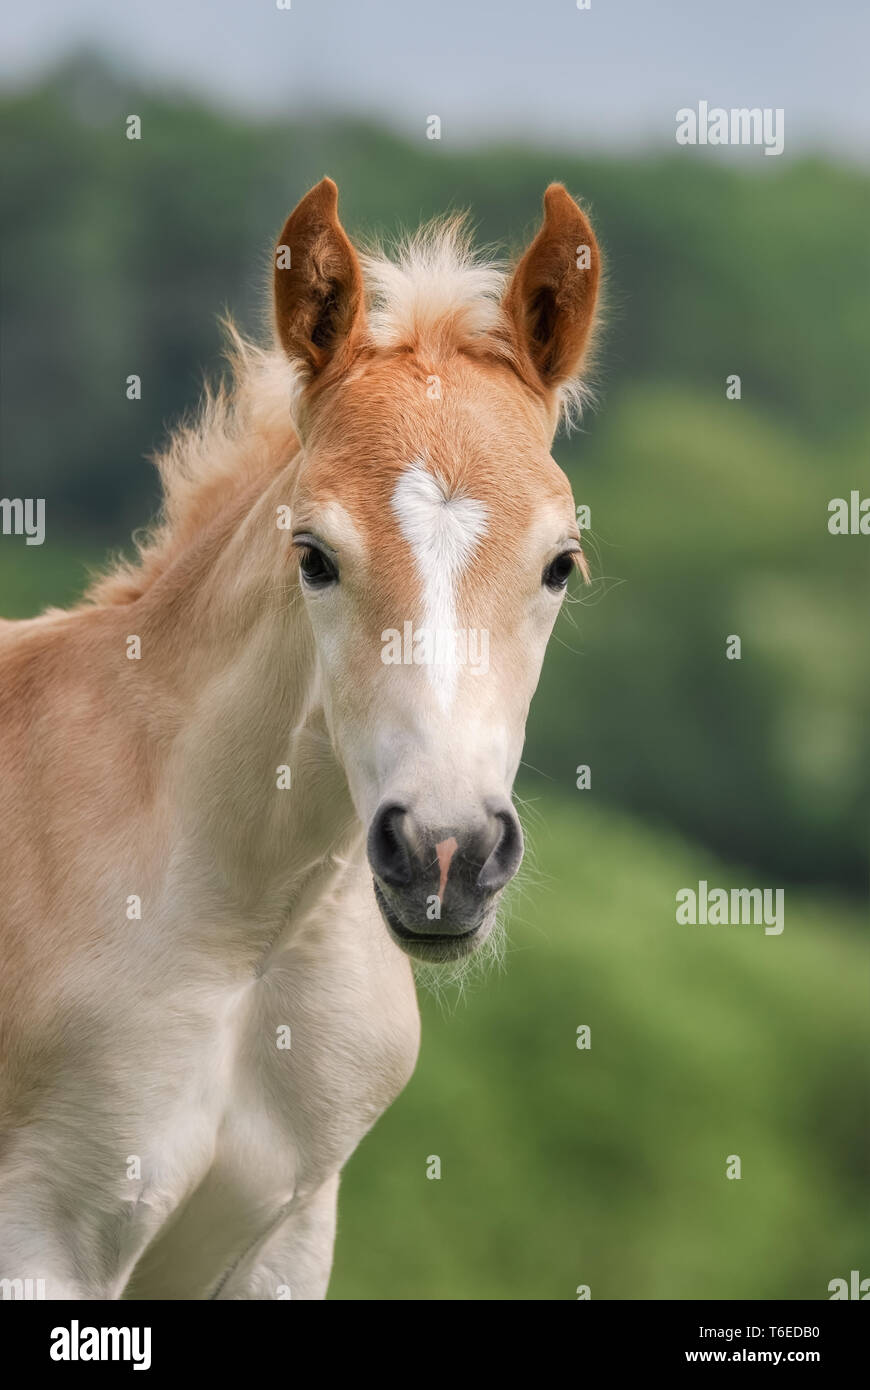 Piccolo grazioso cavallo Haflinger puledro, biondo castagno, alertly permanente in un prato, testa frontale con un bianco blaze marcatura, ritratto Foto Stock